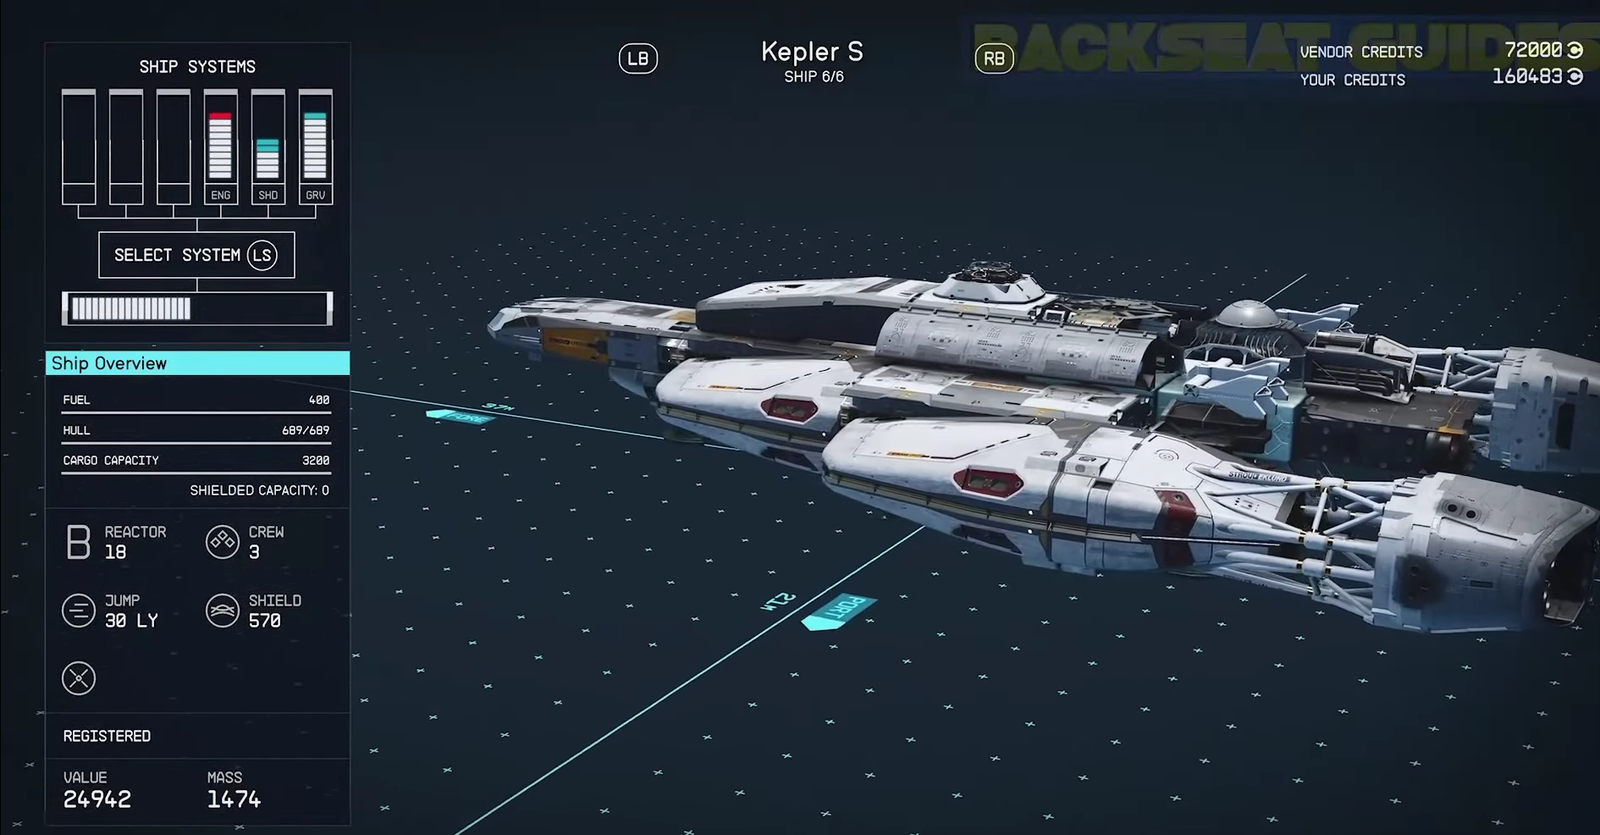 Kepler S ship 